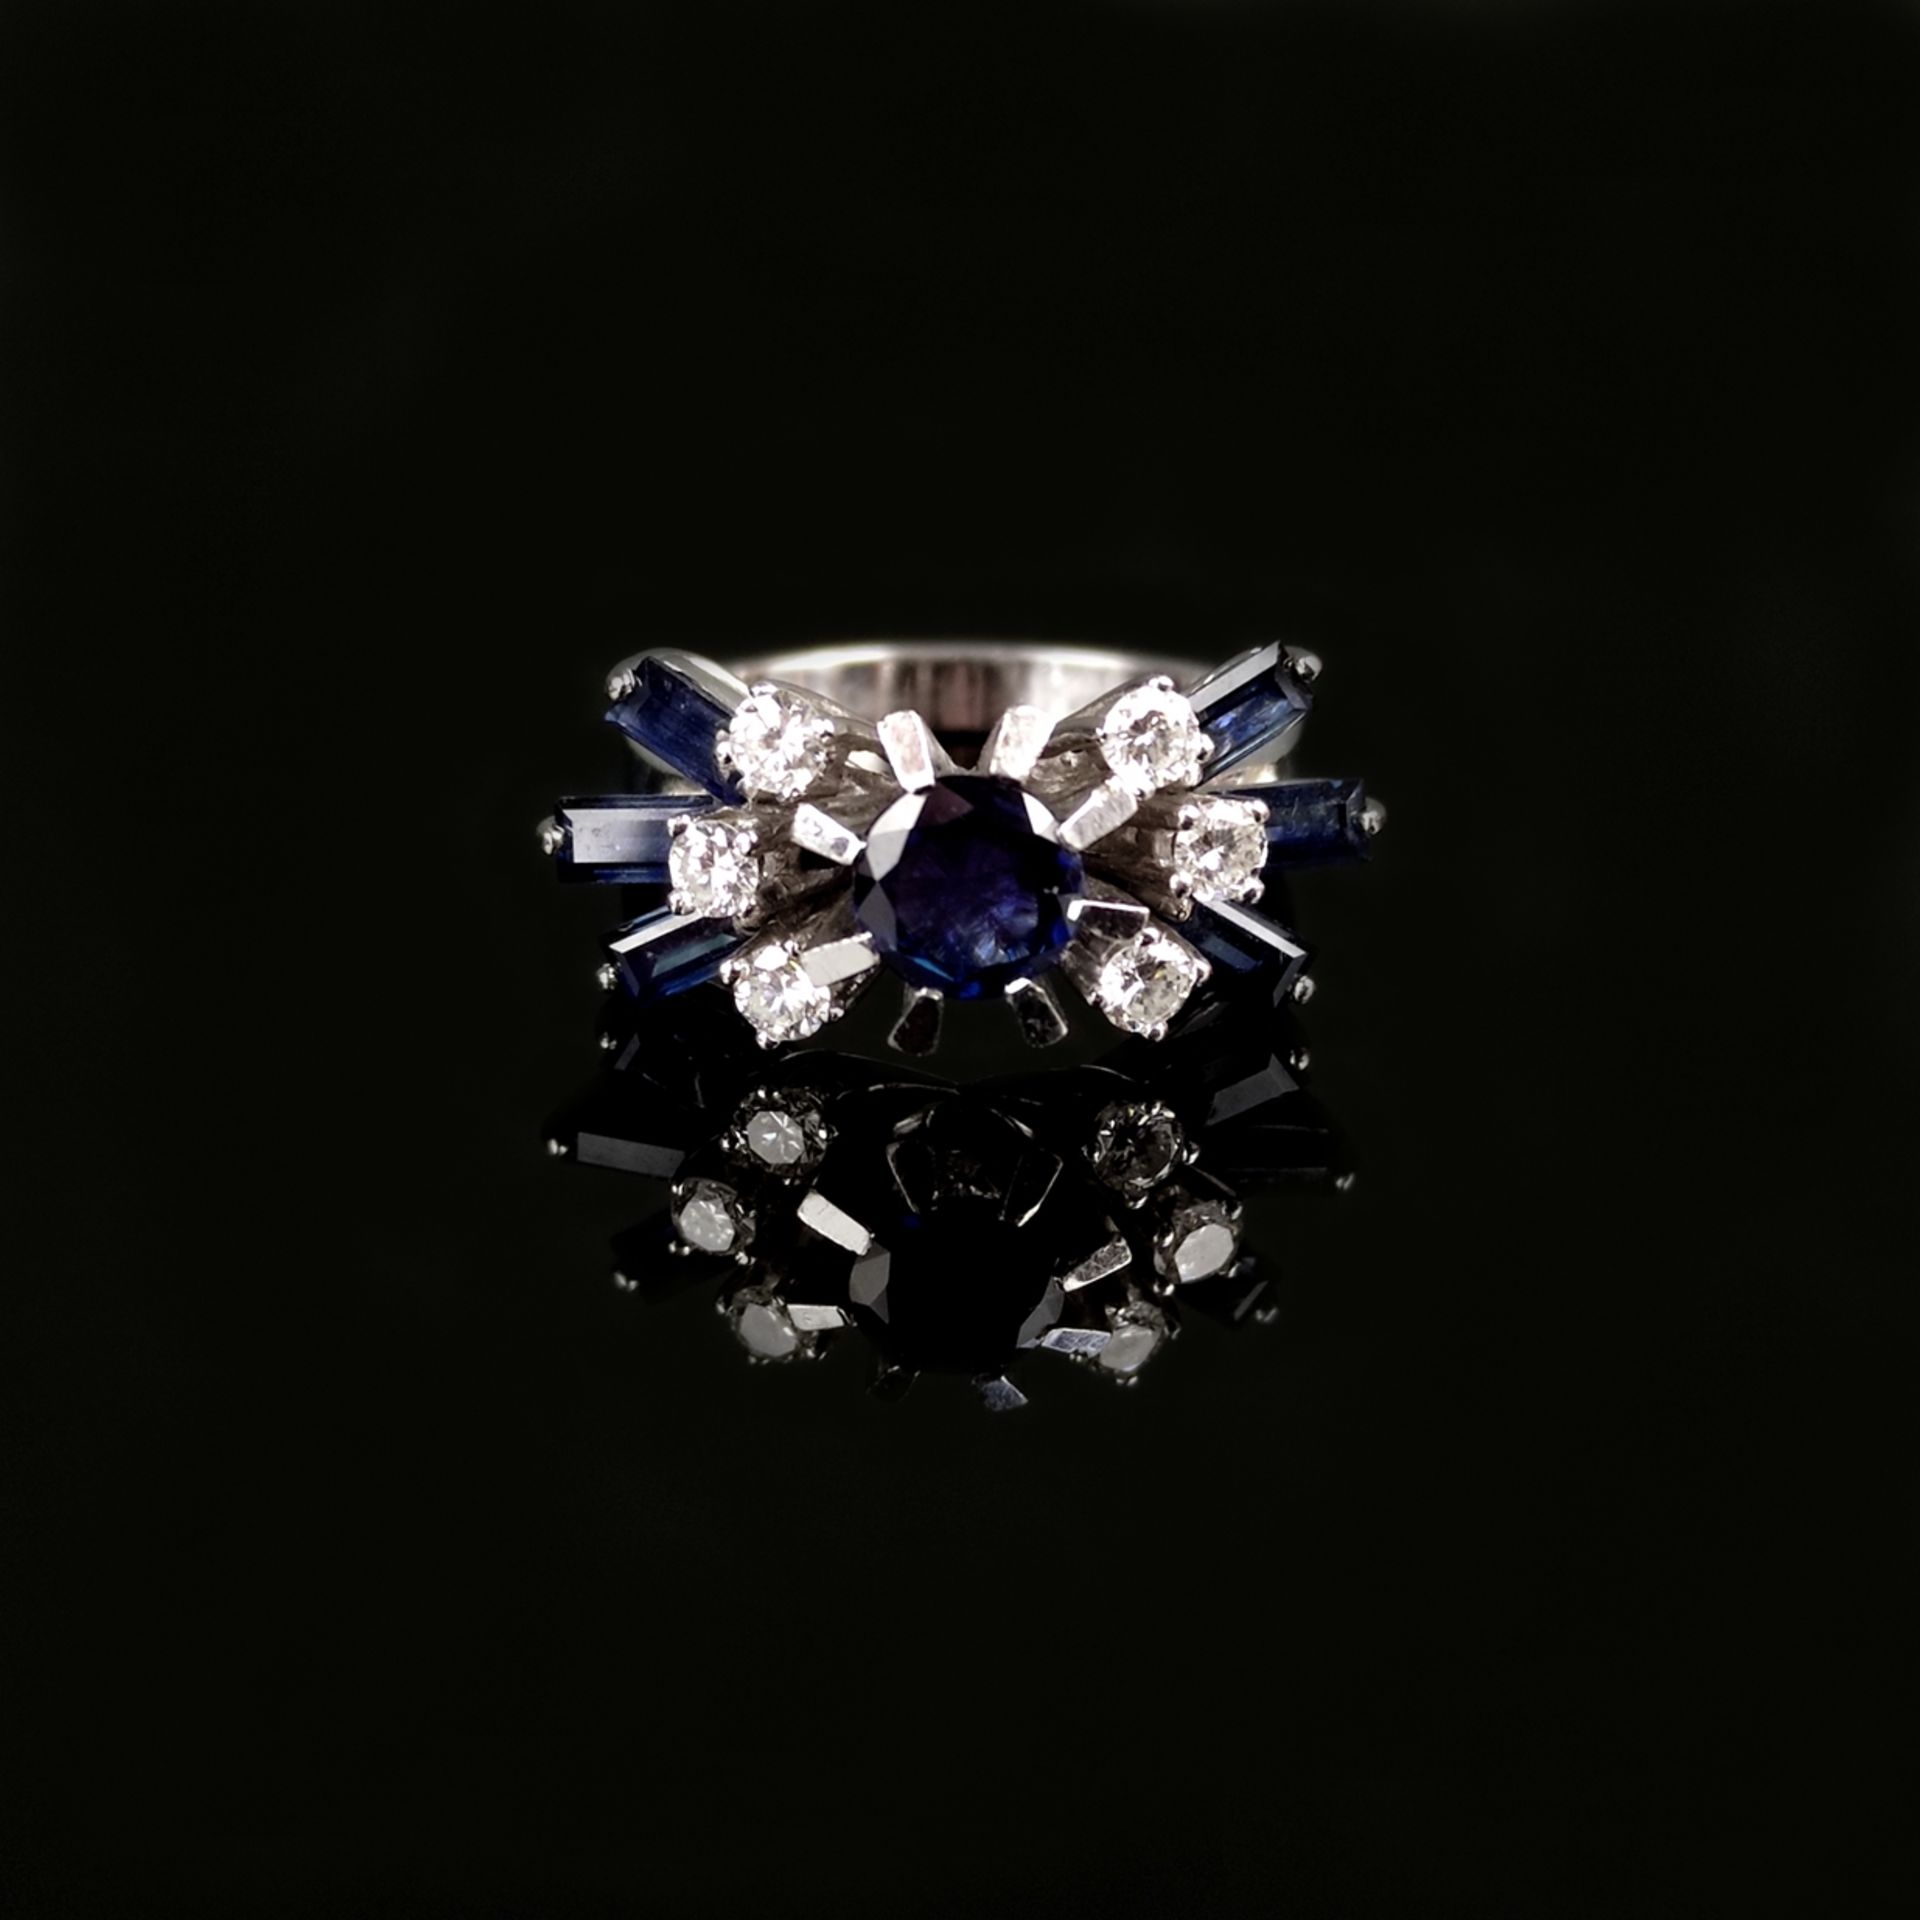 Saphir-Diamant-Ring, 585/14K Weißgold (getestet), 6,37g, mittig mit einem rund facettierten Saphir  - Bild 2 aus 2